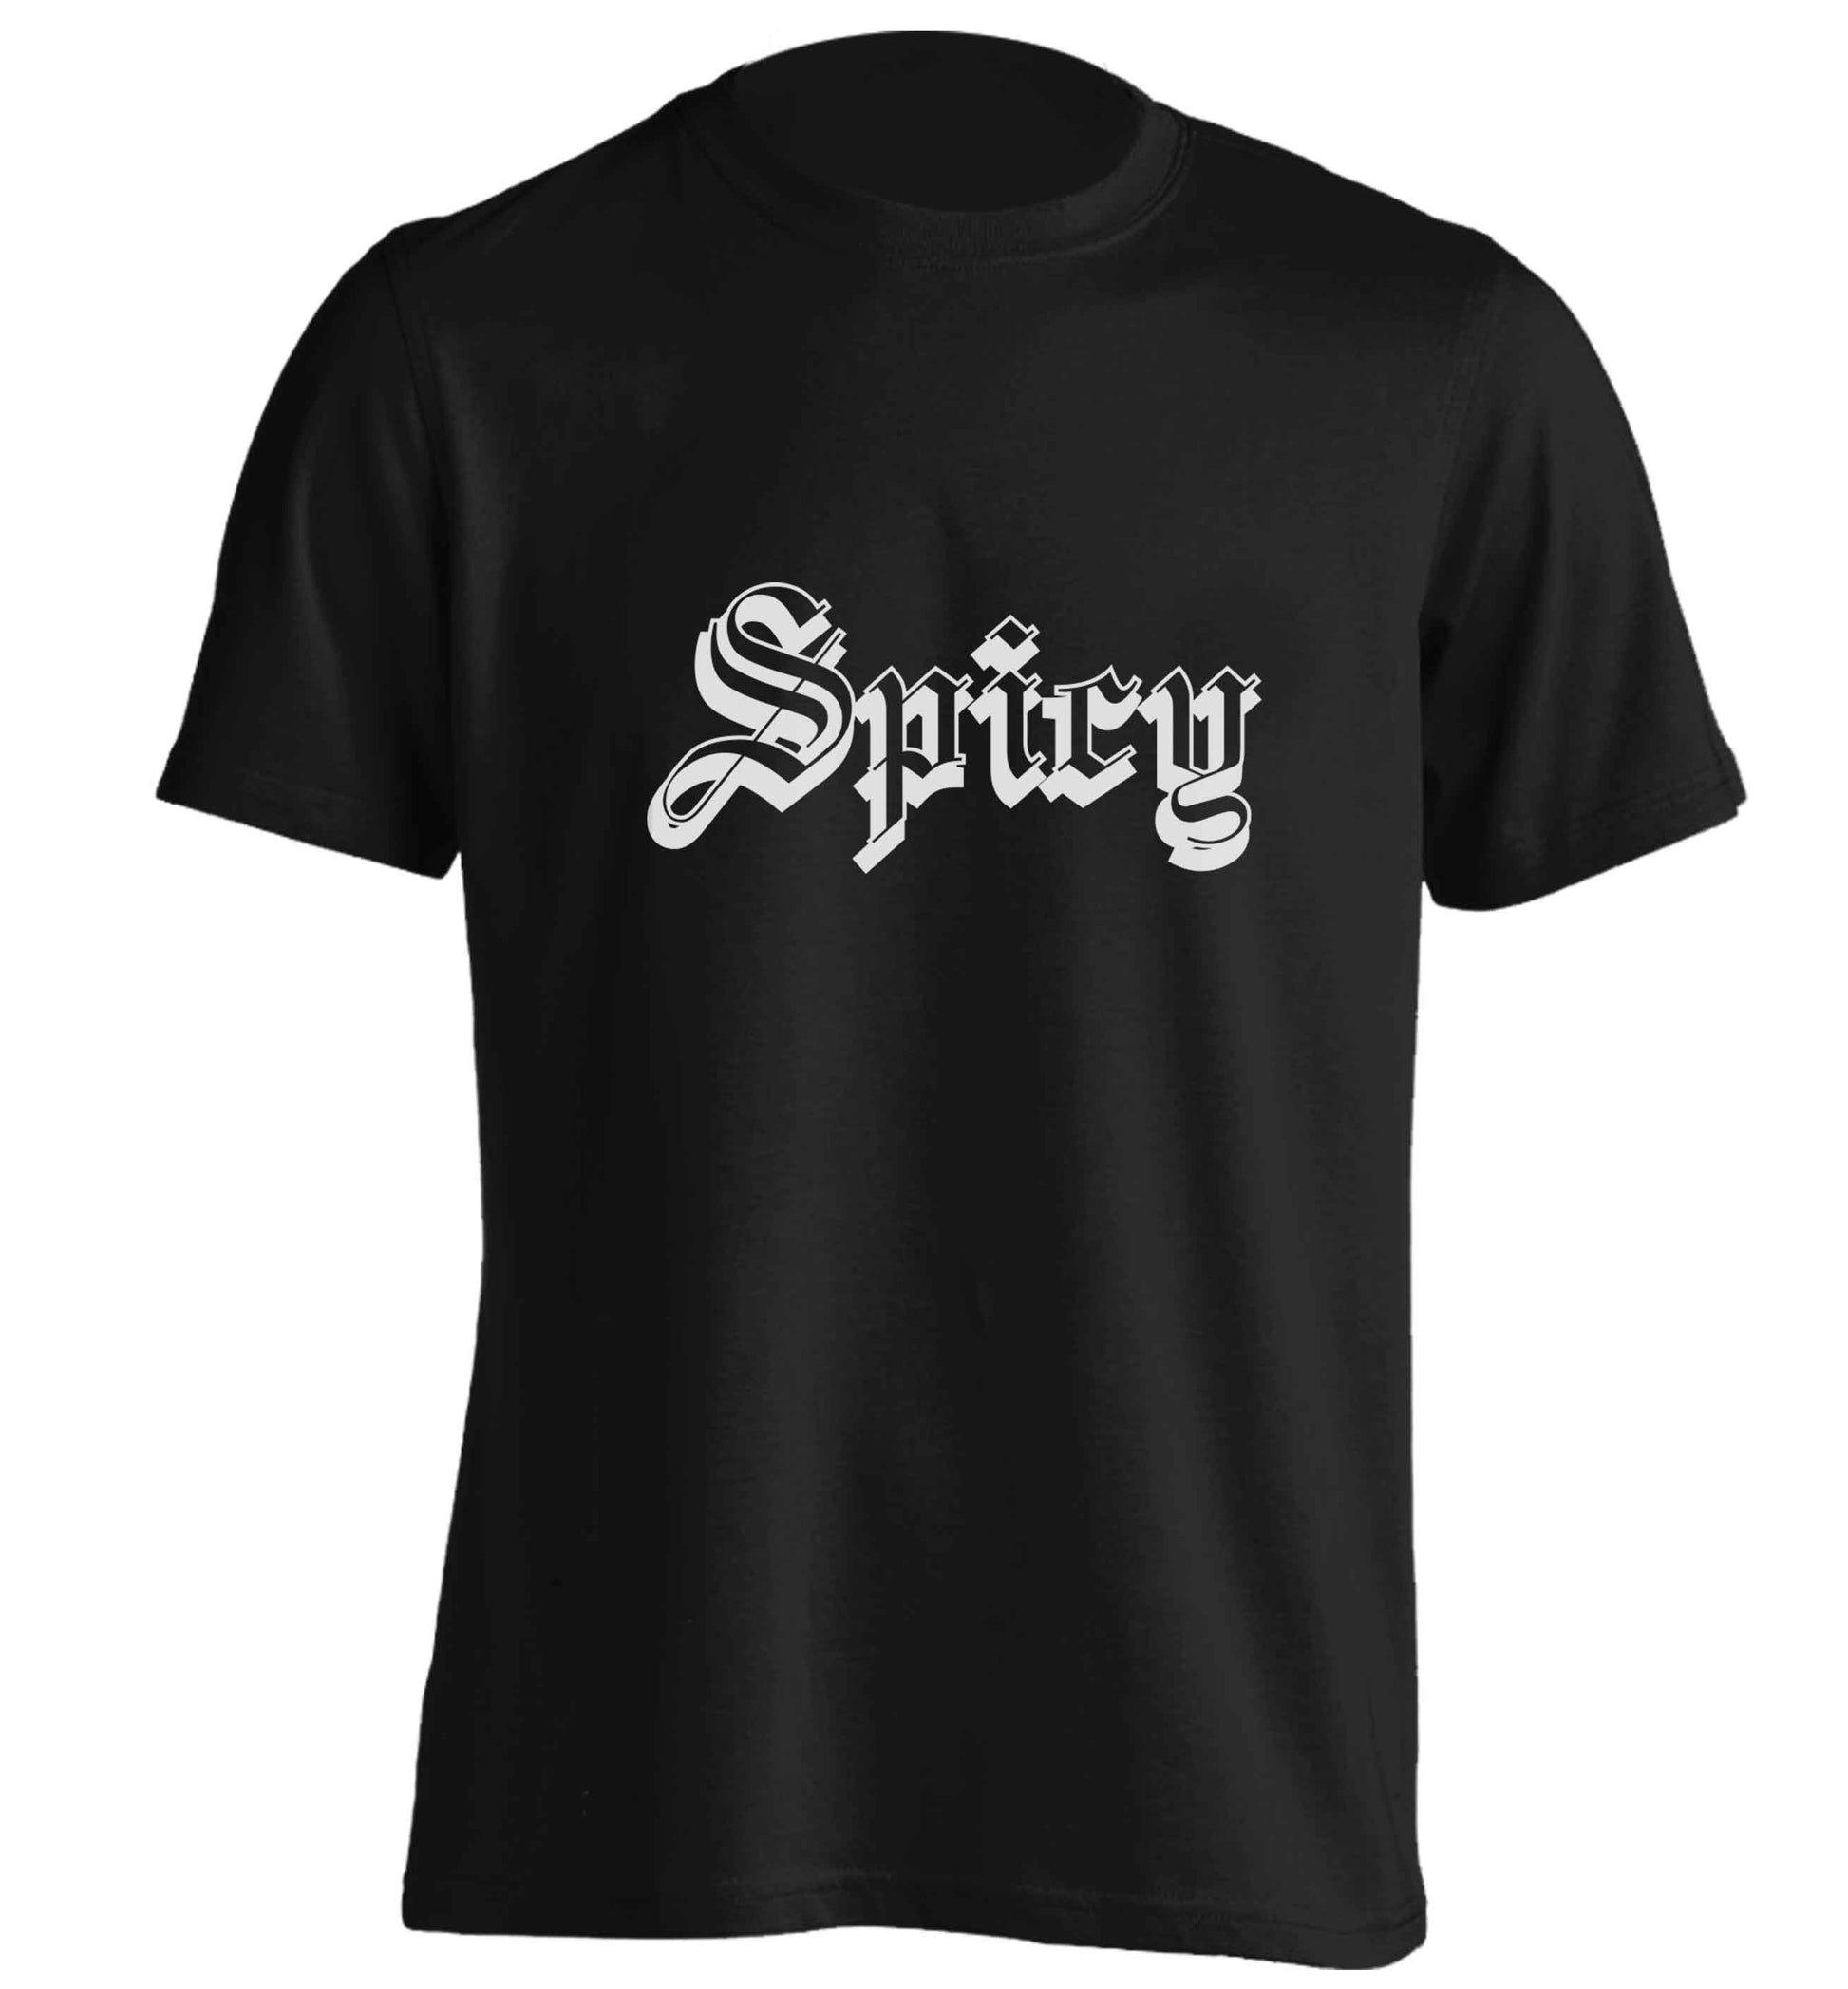 Spicy adults unisex black Tshirt 2XL